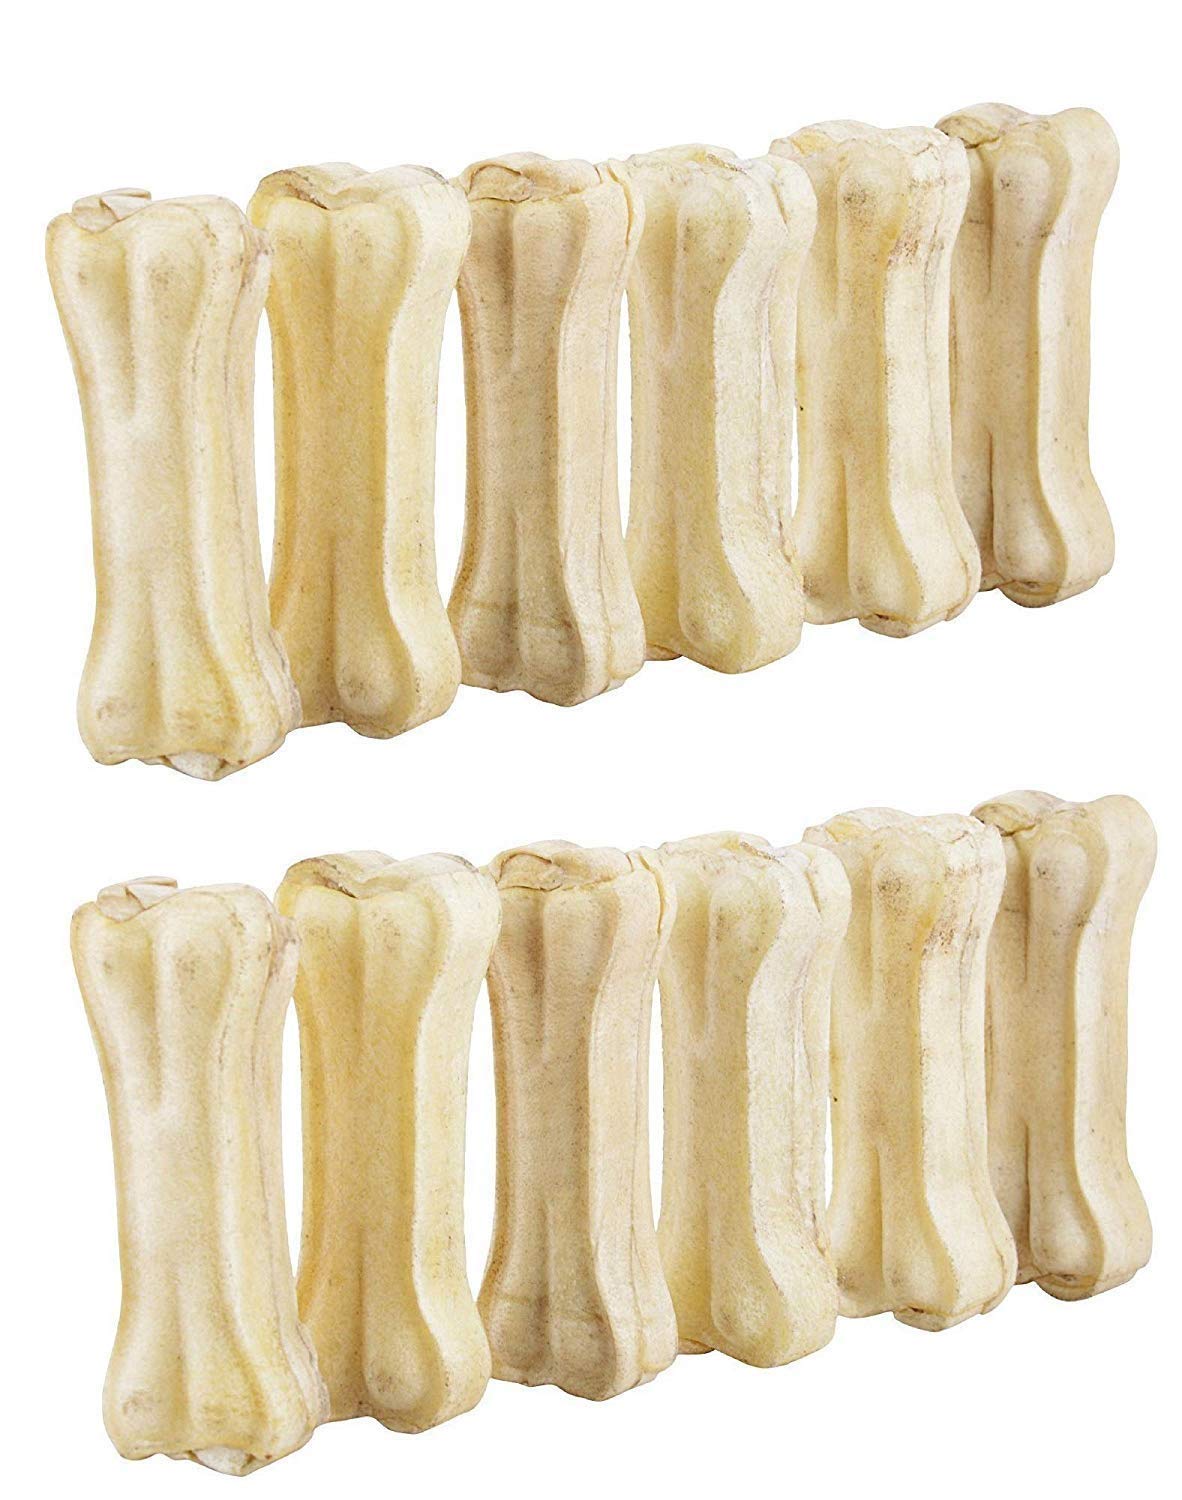 Royal Pet Calcium Bone - Pack of 10